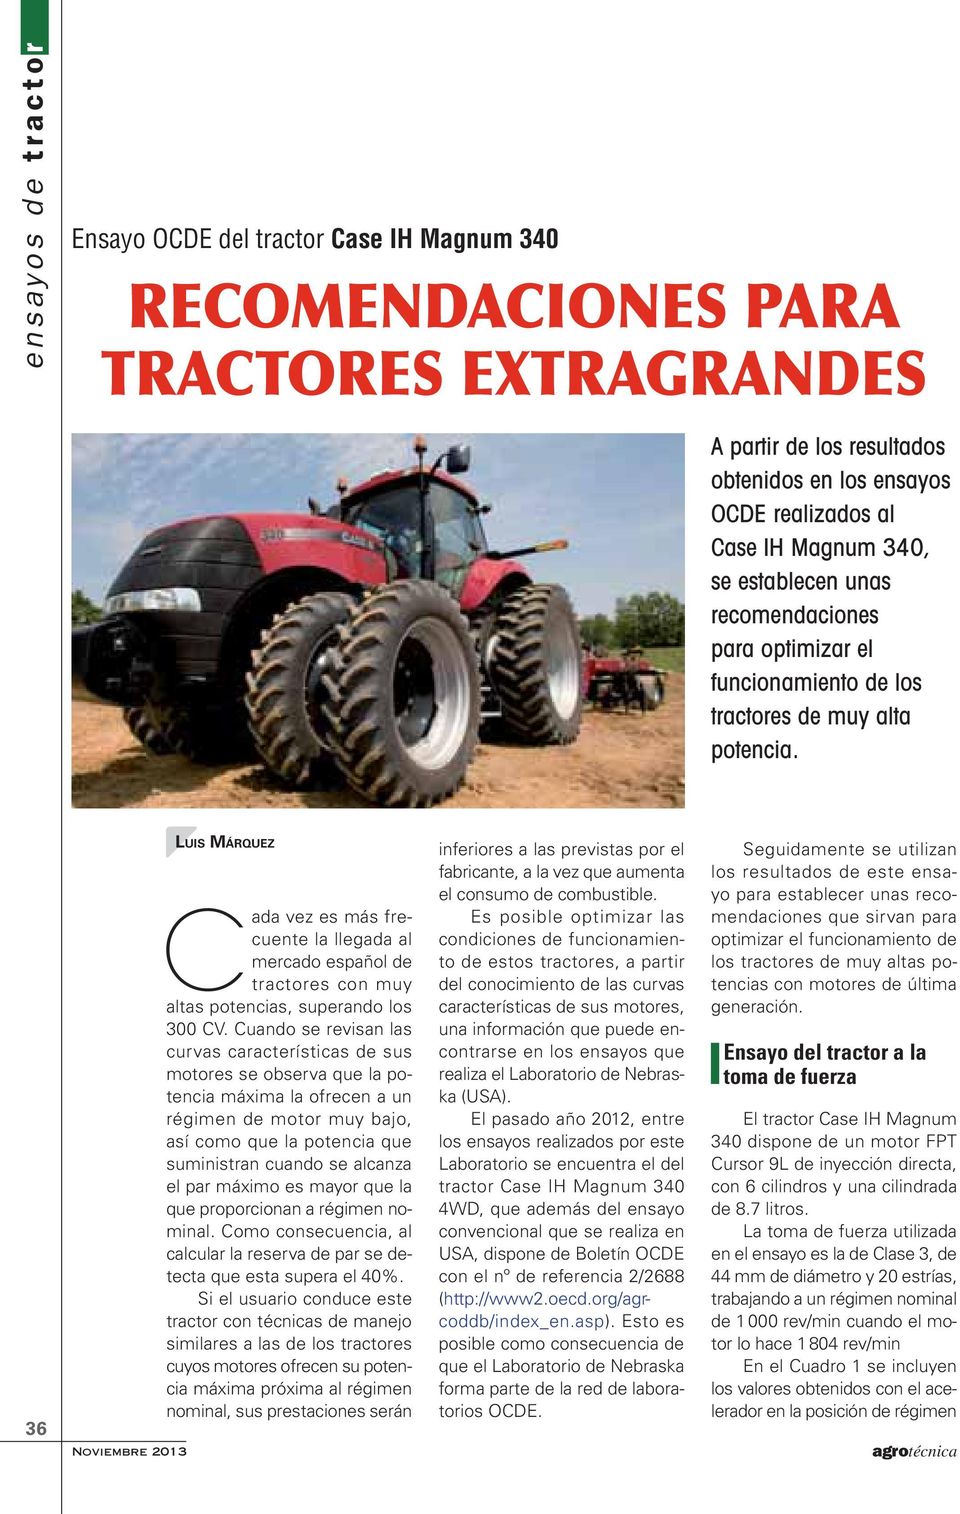 36 LUIS MÁRQUEZ Cada vez es más frecuente la llegada al mercado español de tractores con muy altas potencias, superando los 300 CV.